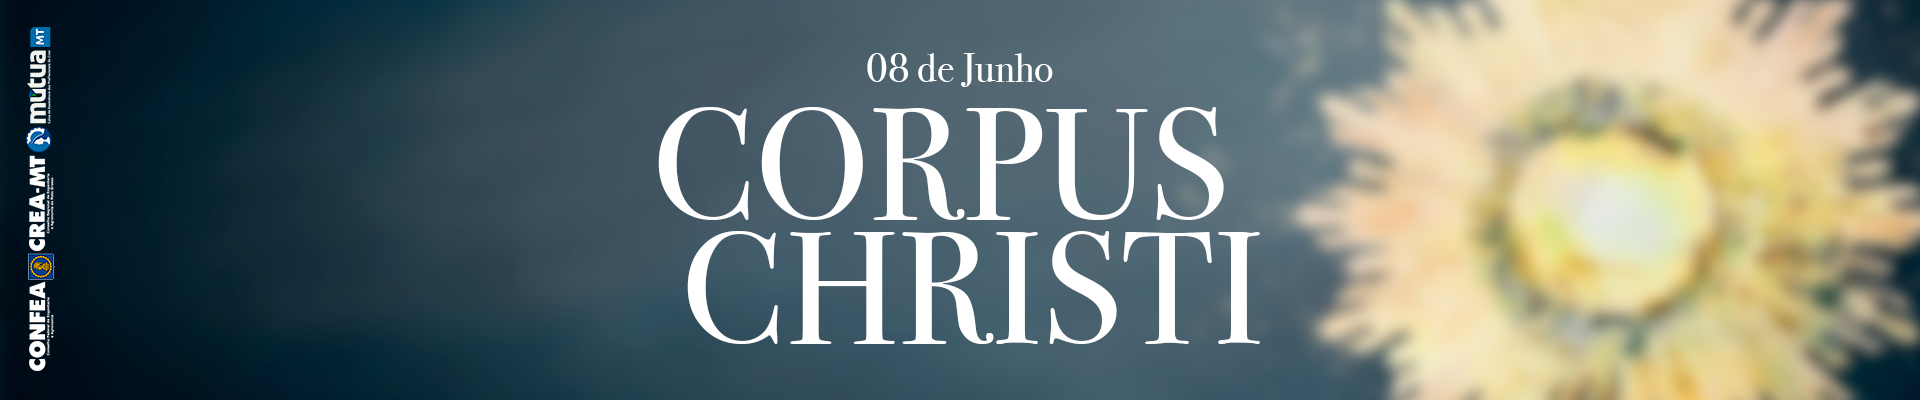 Crea-MT terá feriado e ponto facultativo nos dias 08 e 09 de junho em função da festividade de Corpus Christi